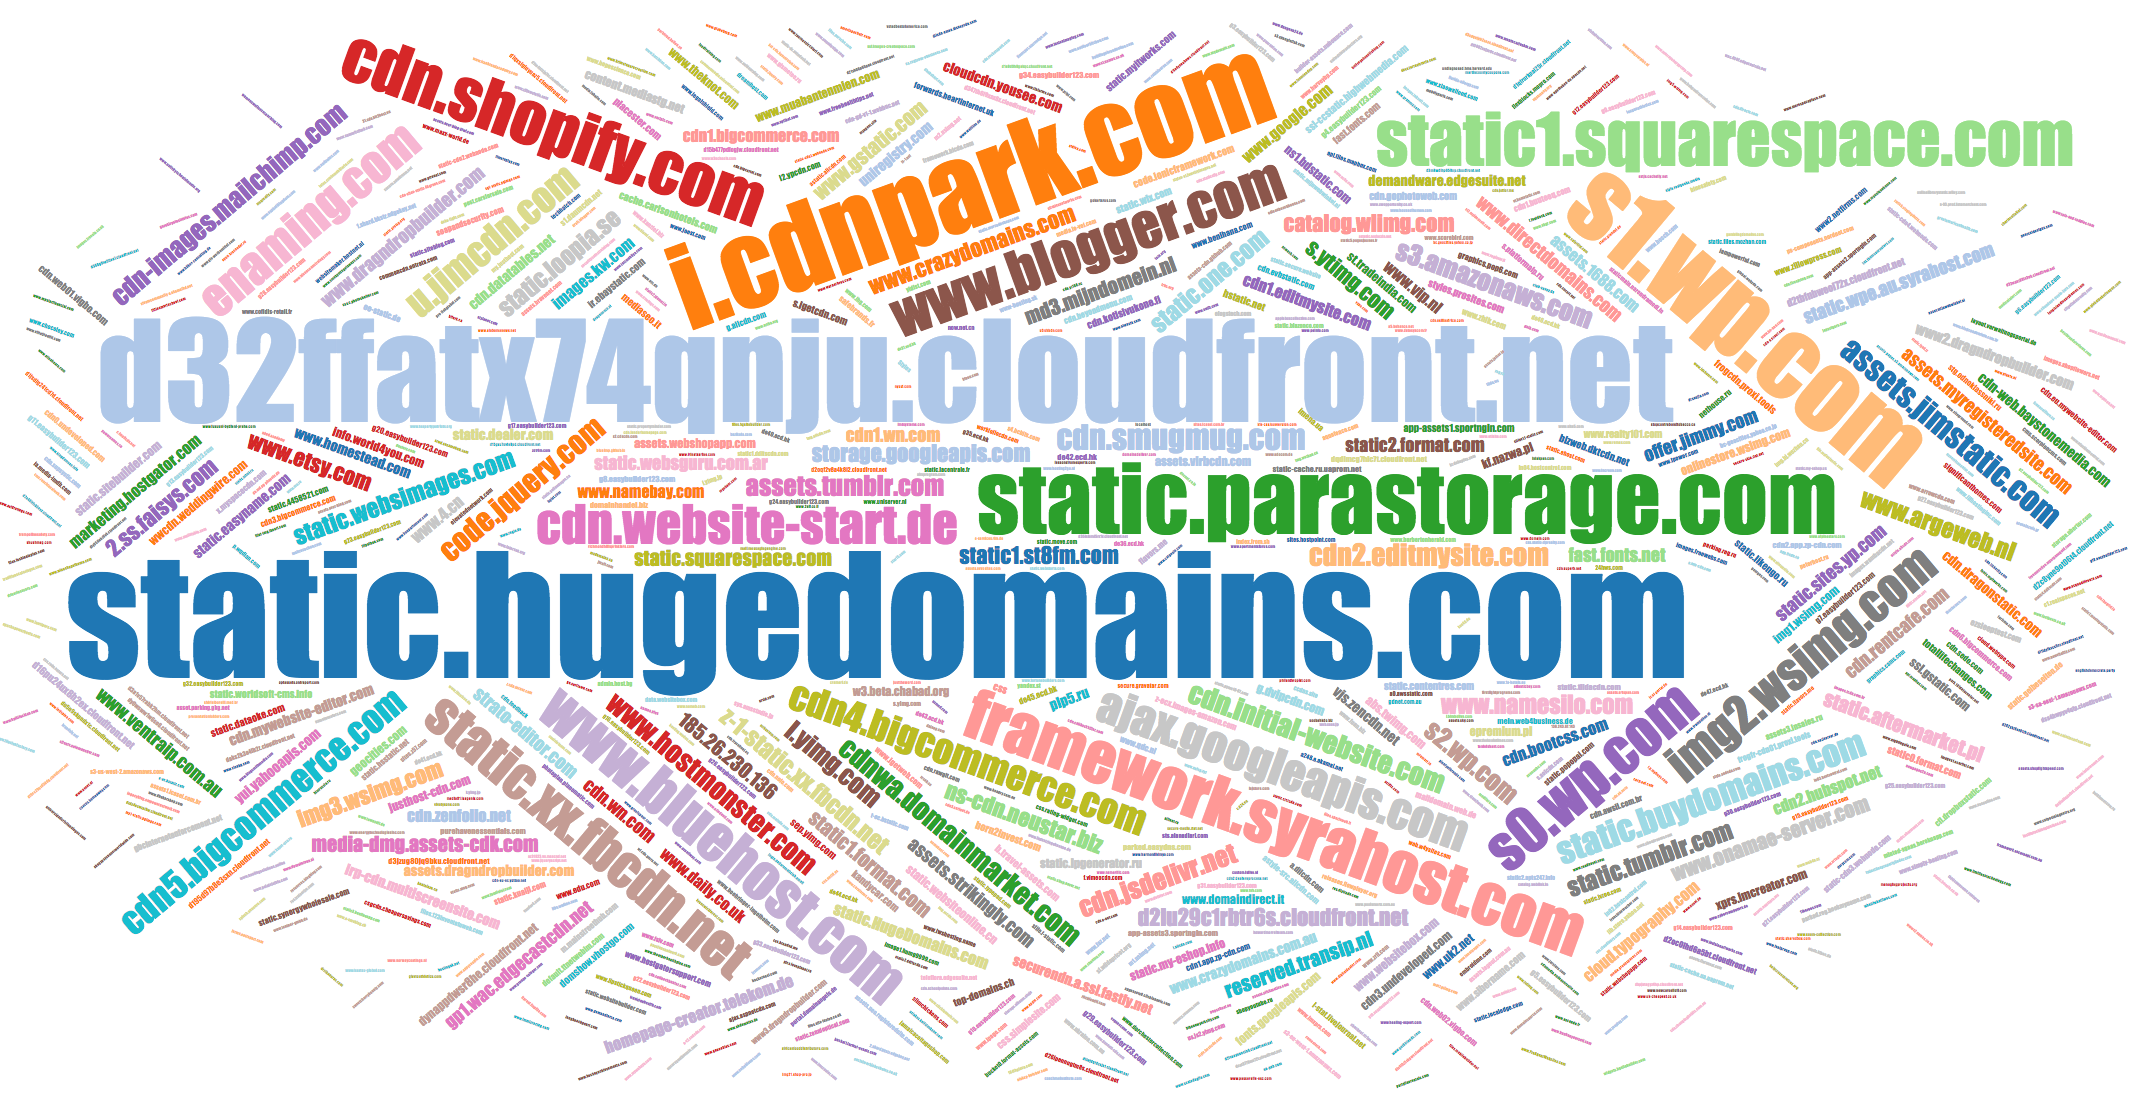 Popular names of CSS domains bizweb.dktcdn.net, b.travel-assets.com, etc.